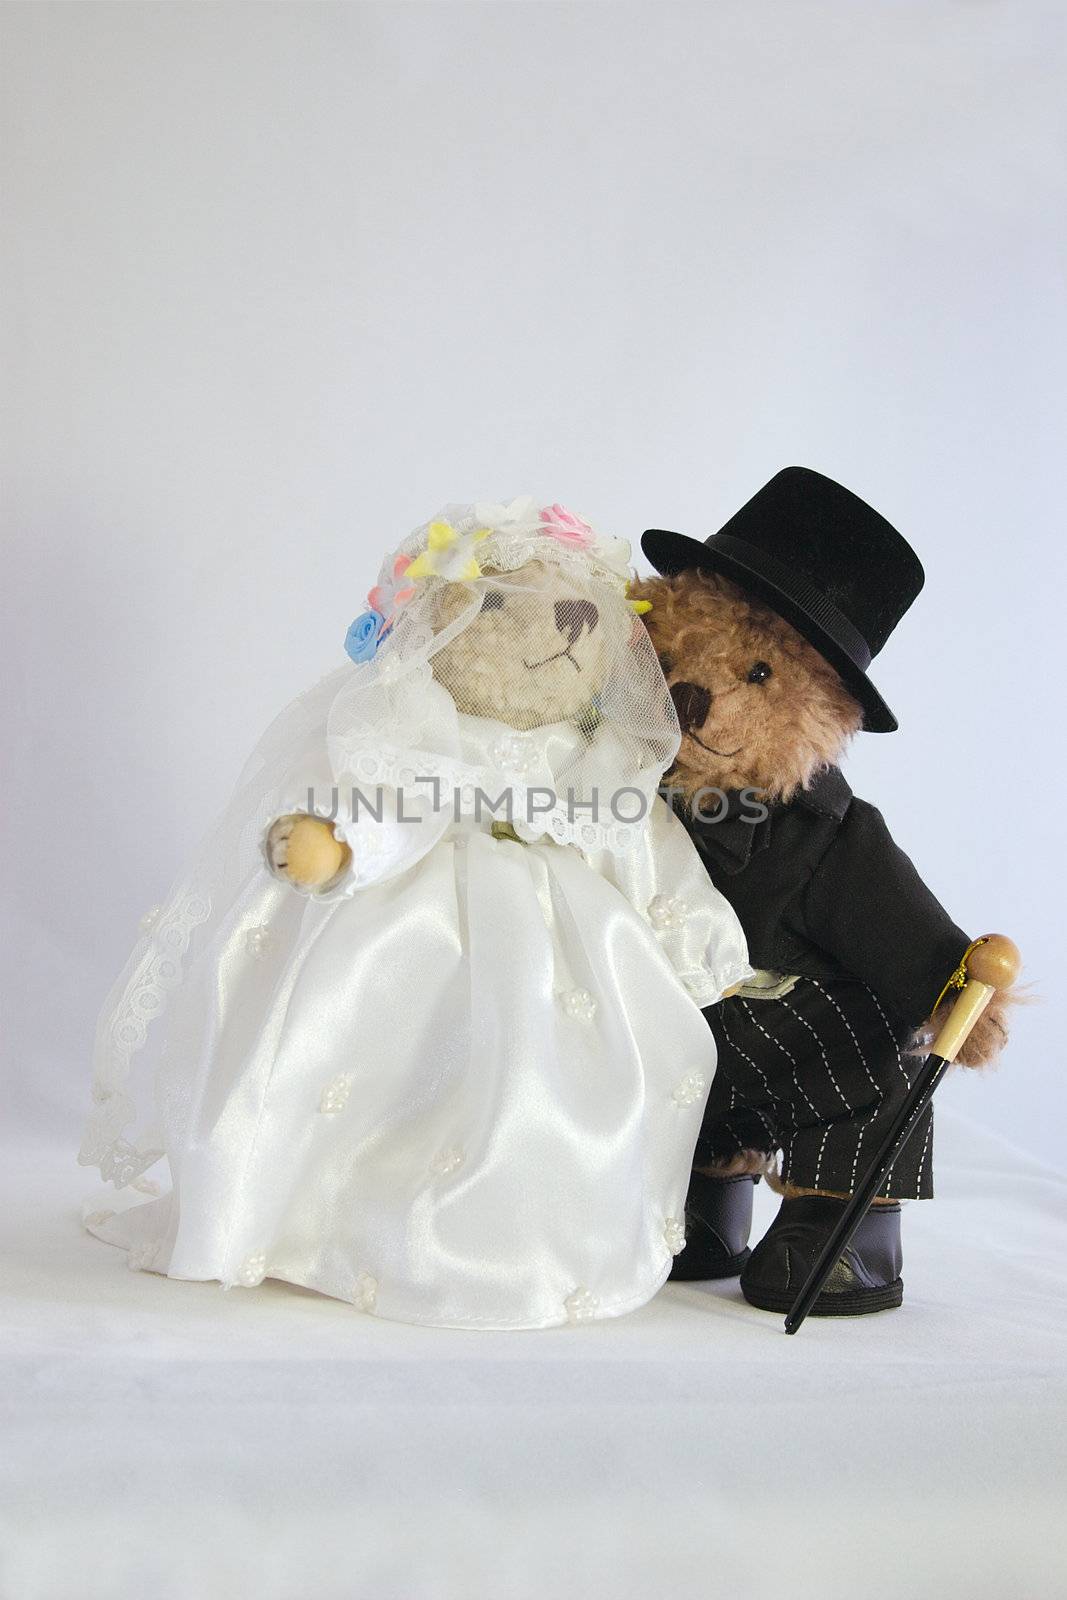 teddies dressed as bride and groom